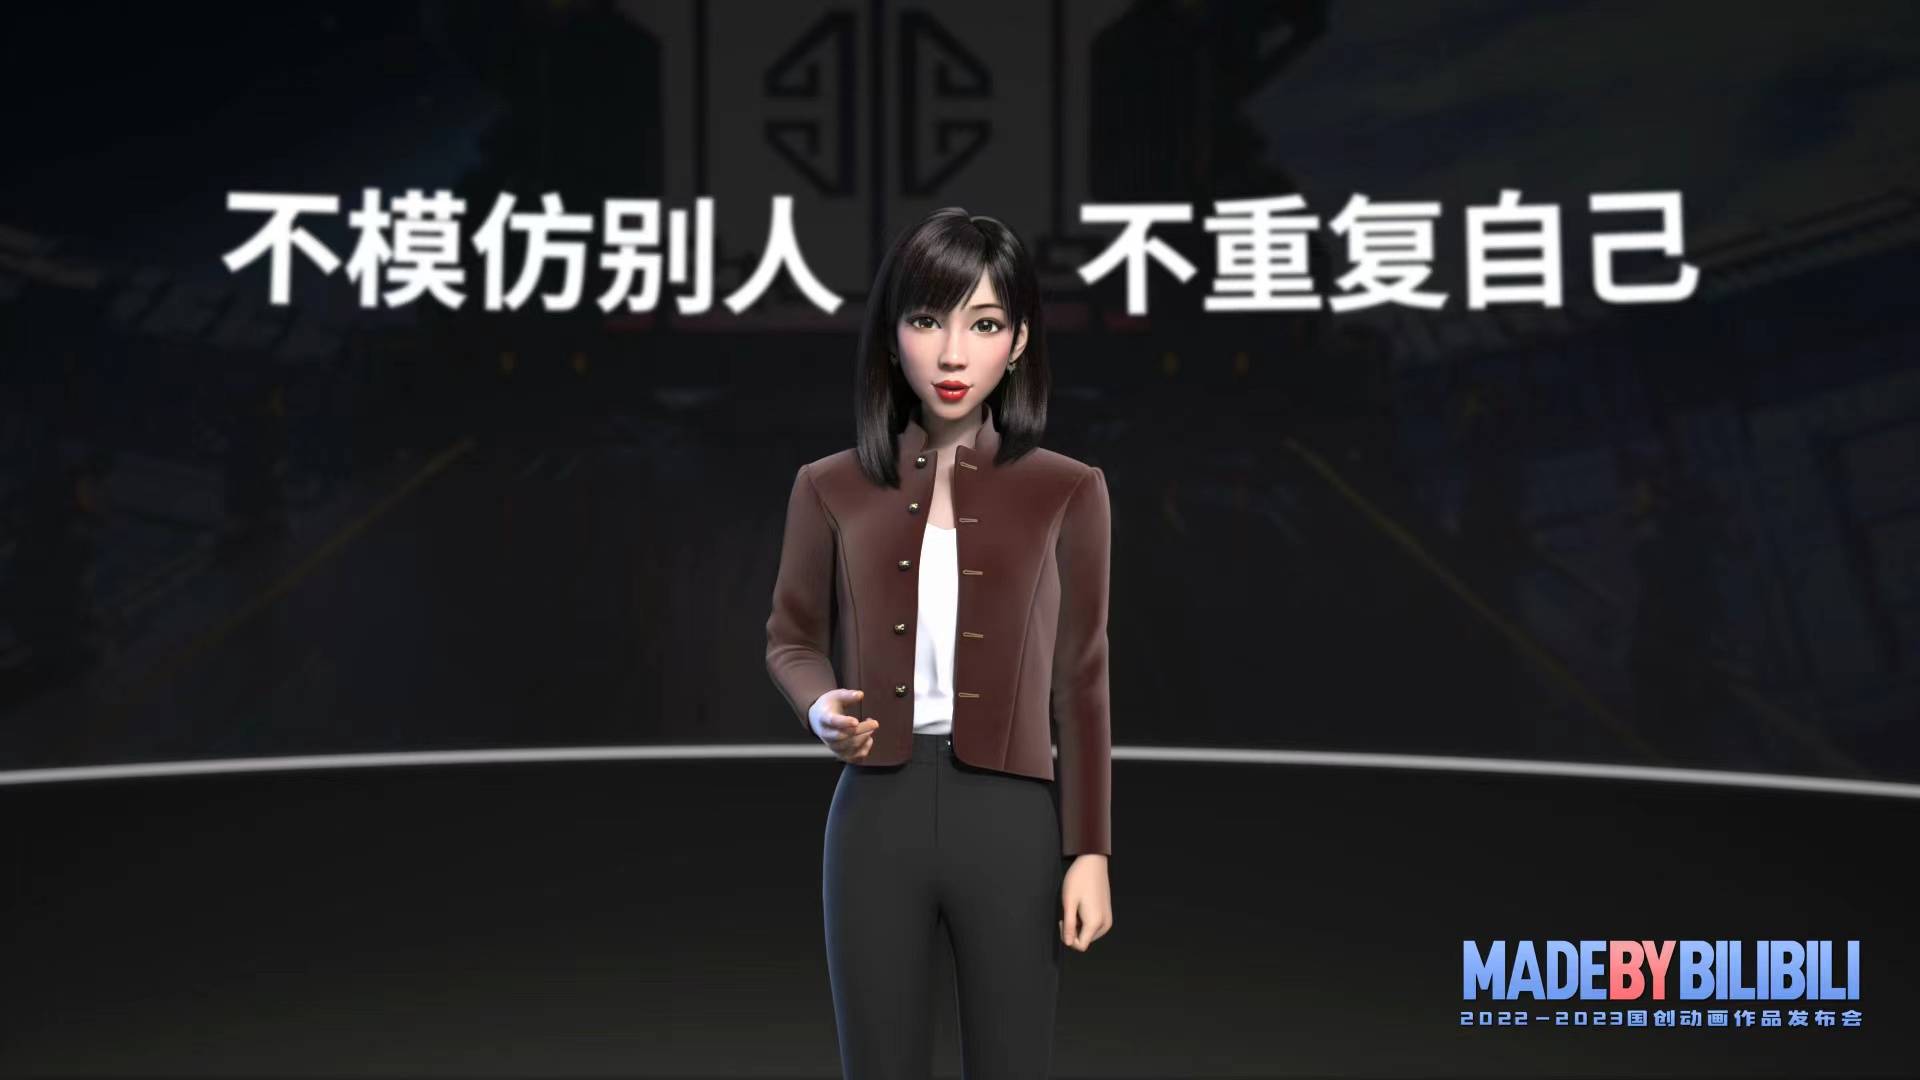 bumofang - “Three-Body Problem” è impostato, l’industria dell’animazione cinese può trattenere i talenti?